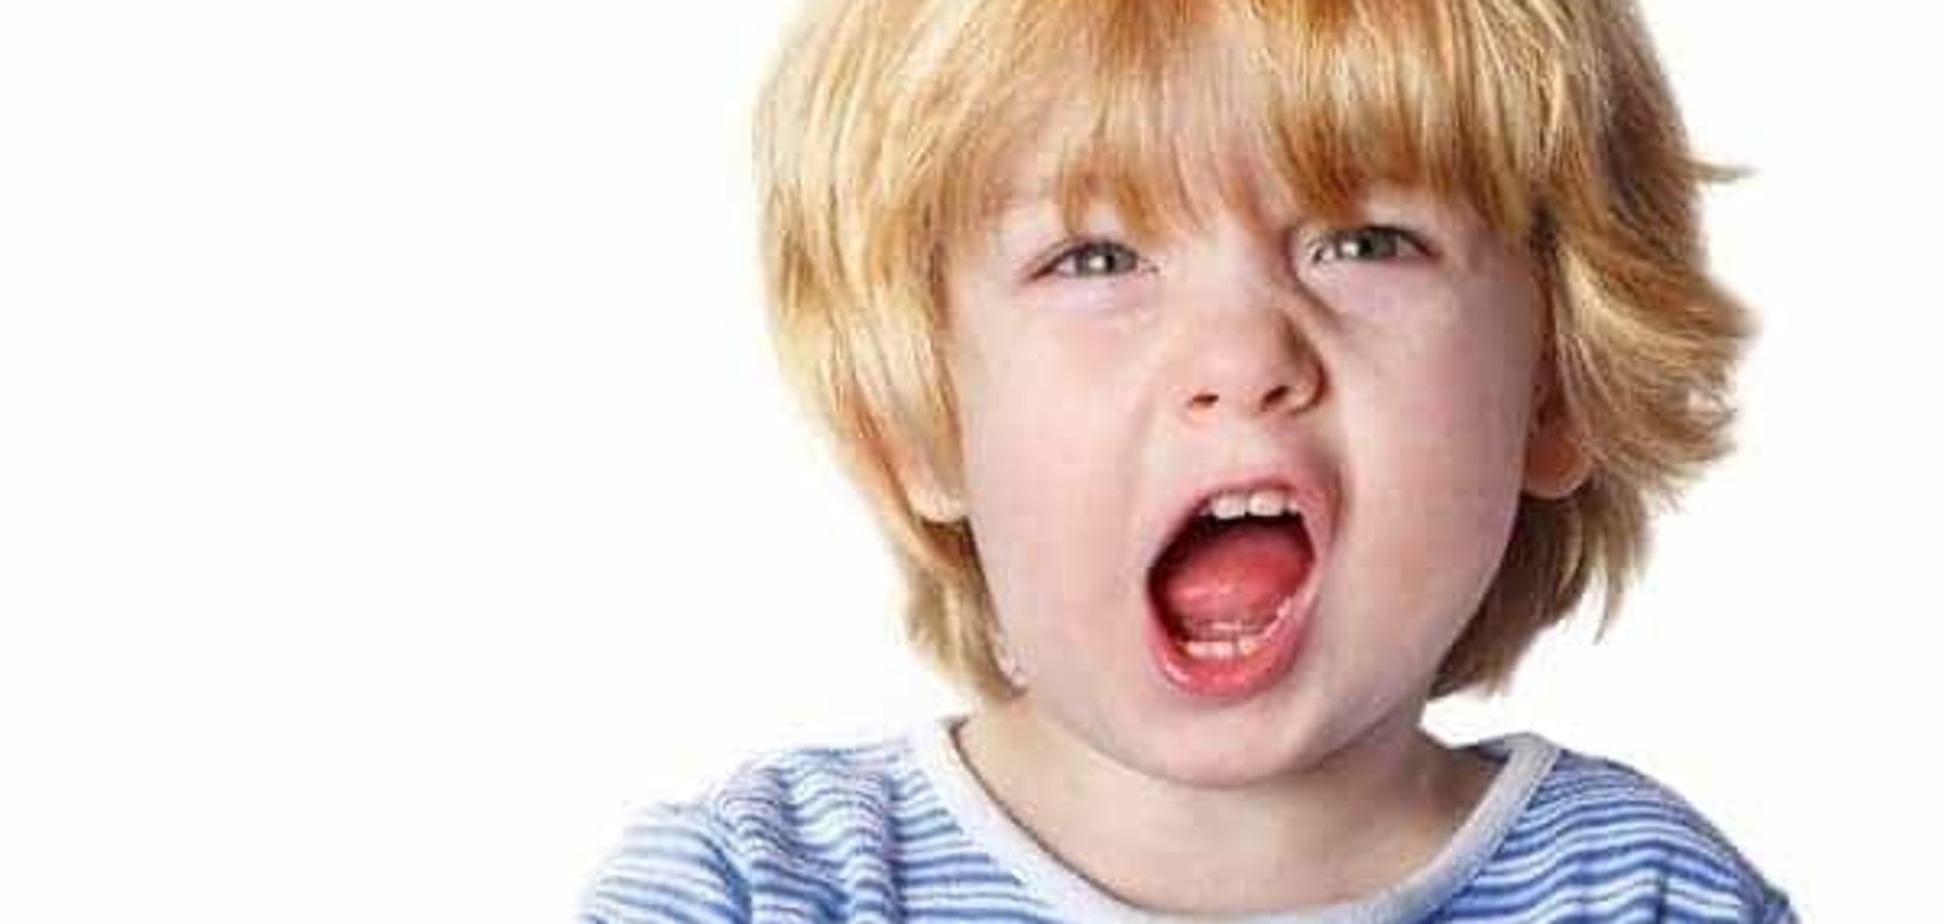 Как реагировать на детскую агрессию?